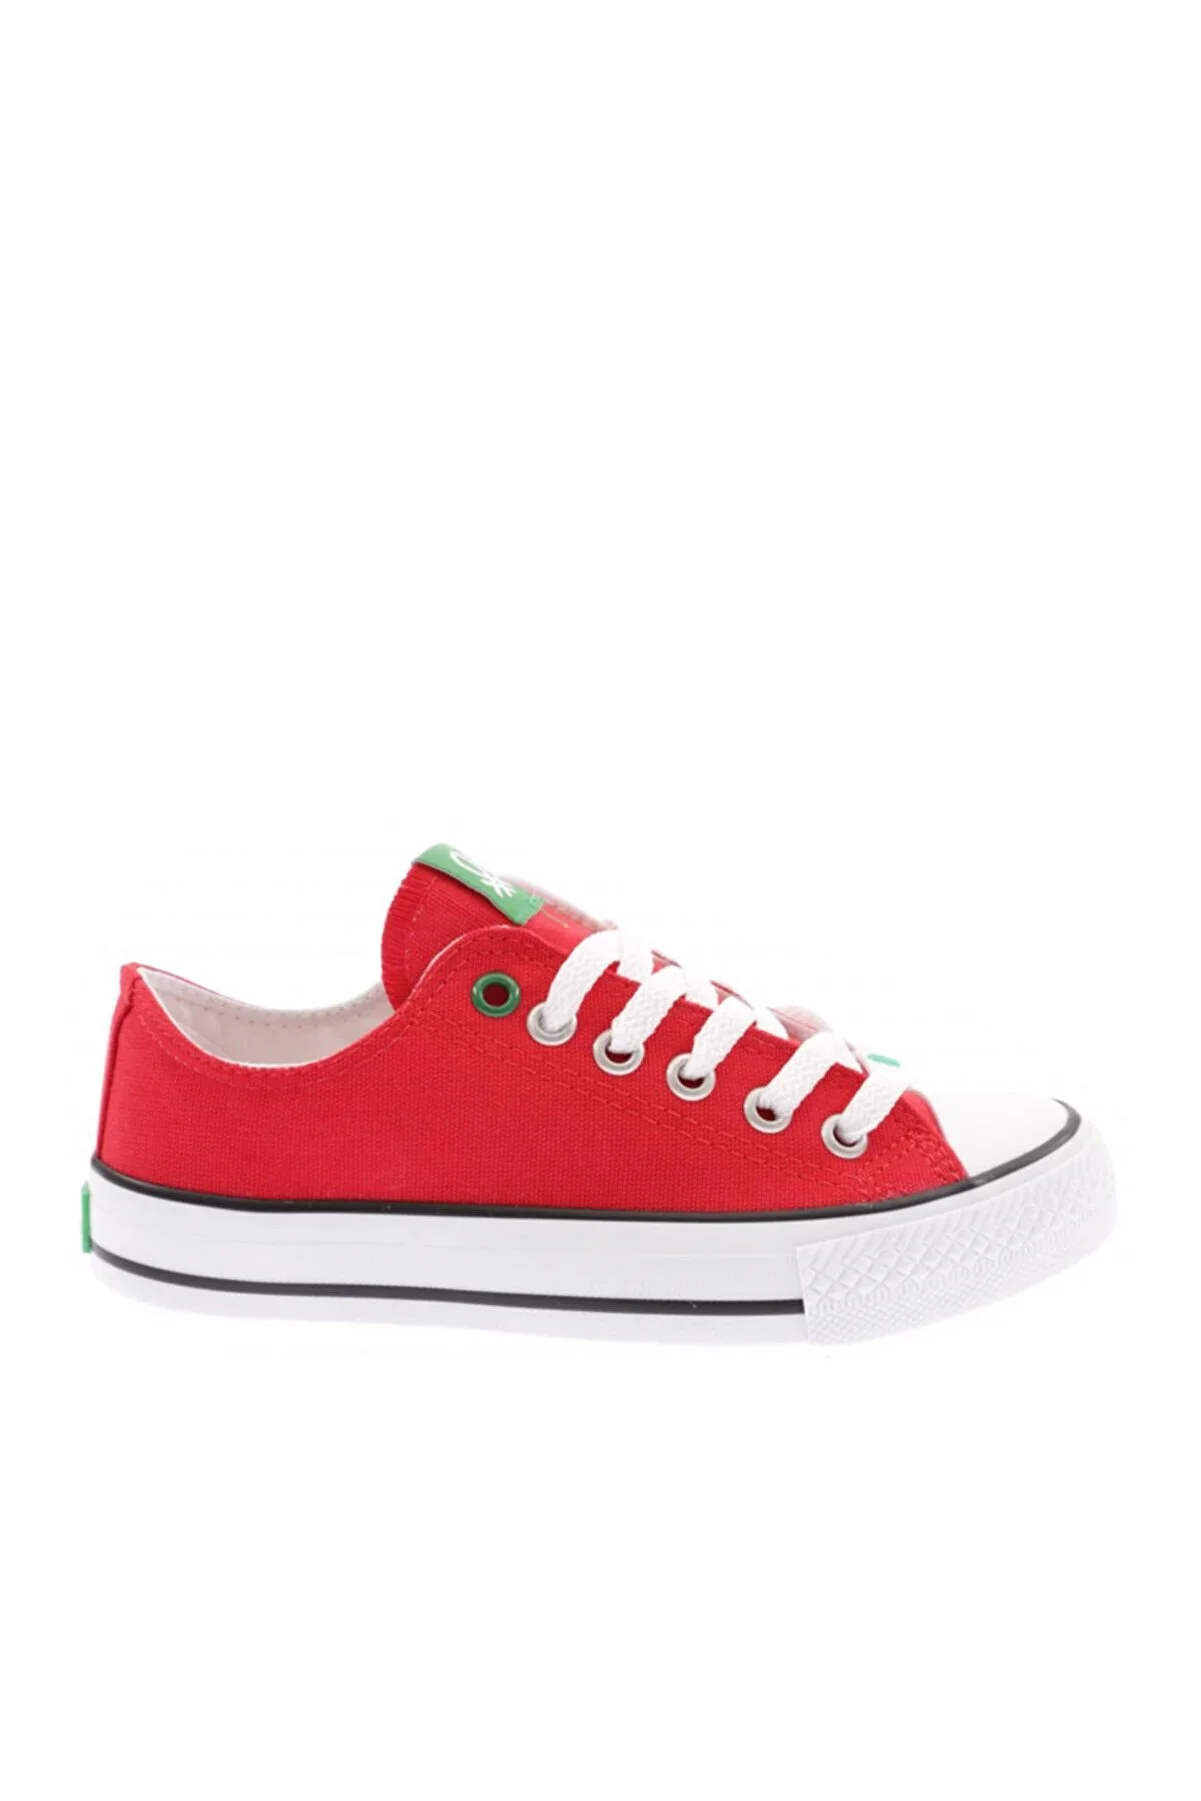 Kadın Spor ayakkabı-BN-30196-Kırmızı - 1